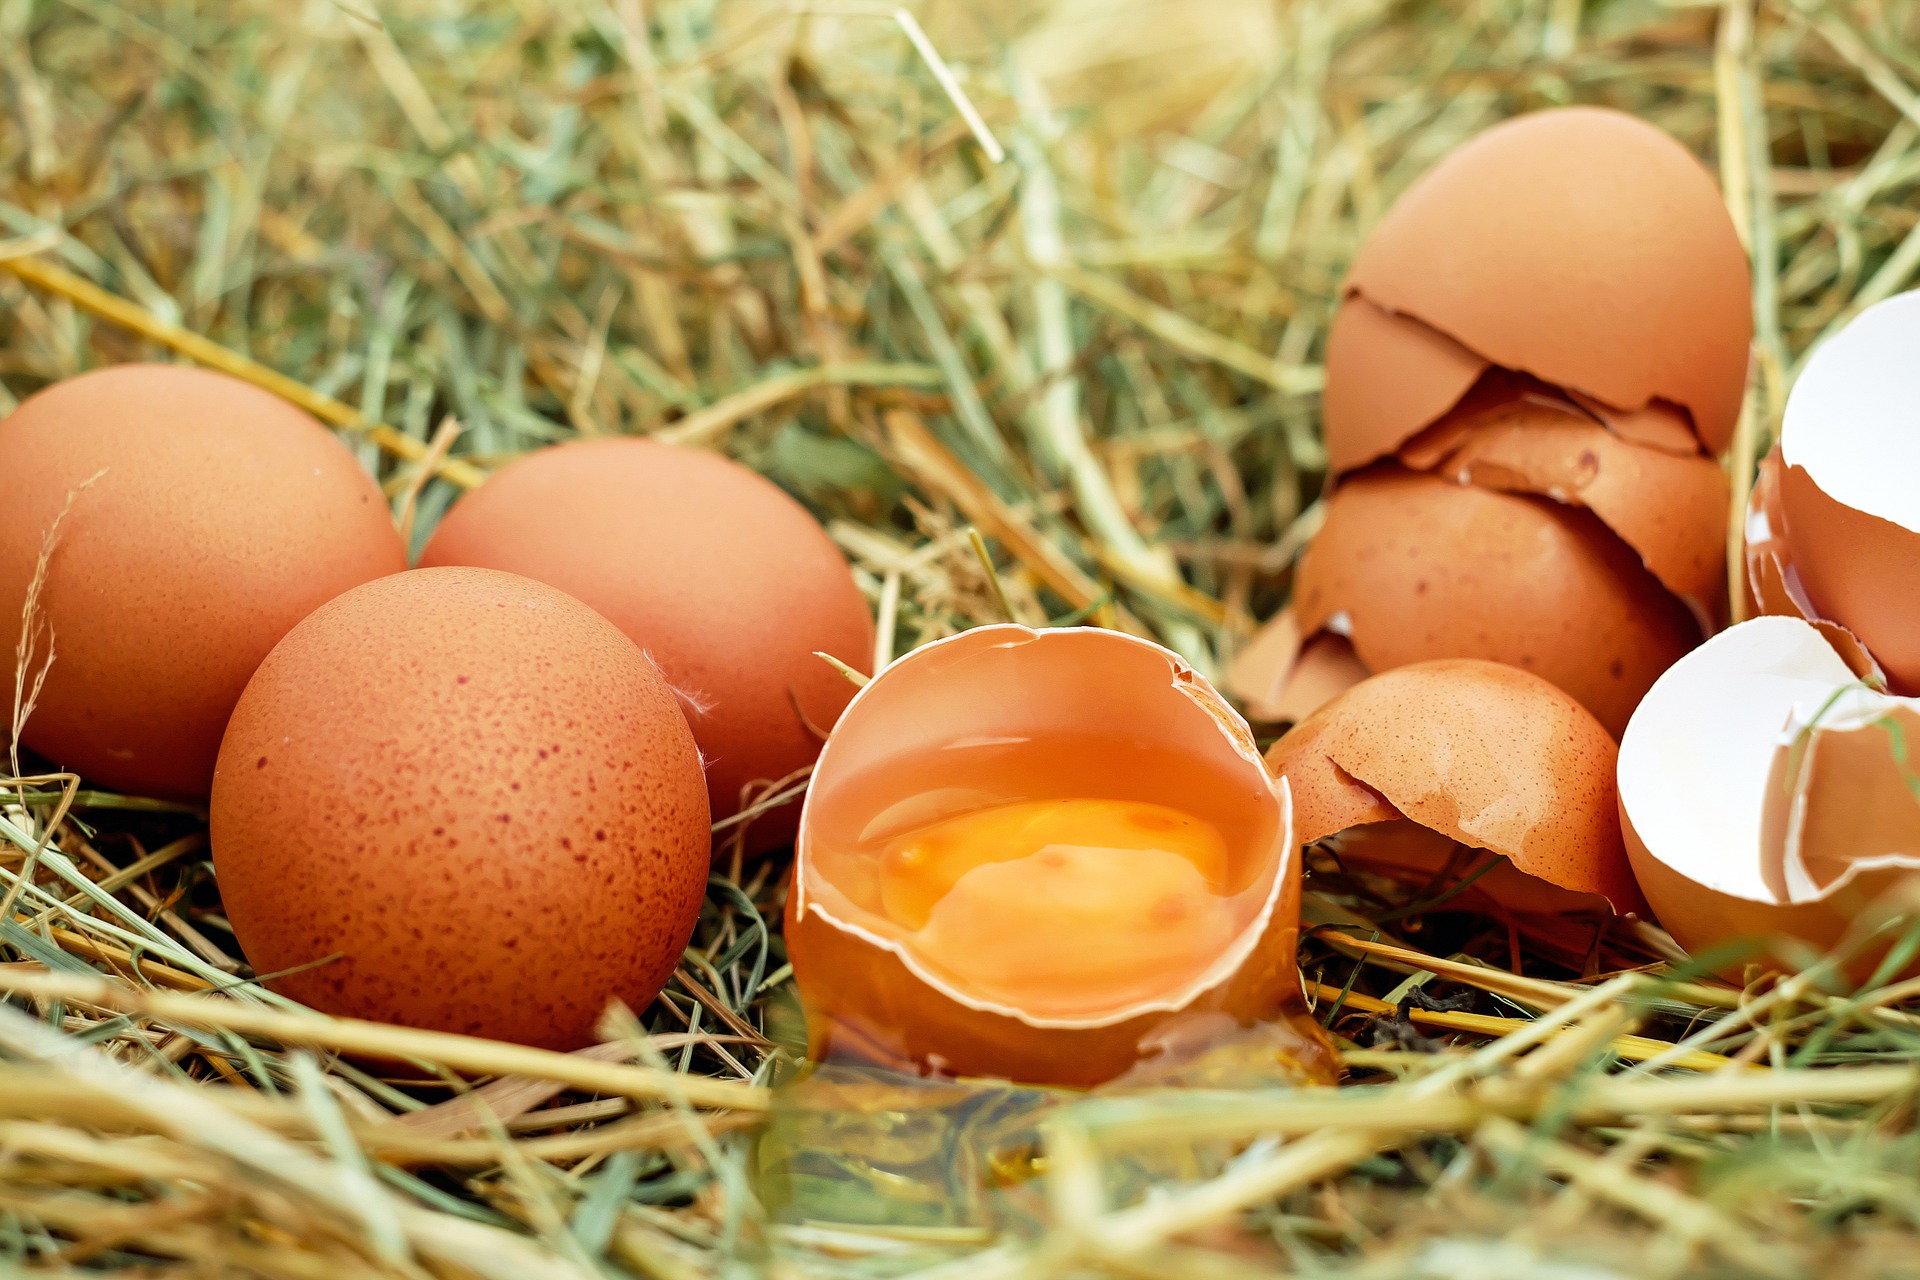 Hoe gebruik je eieren optimaal?